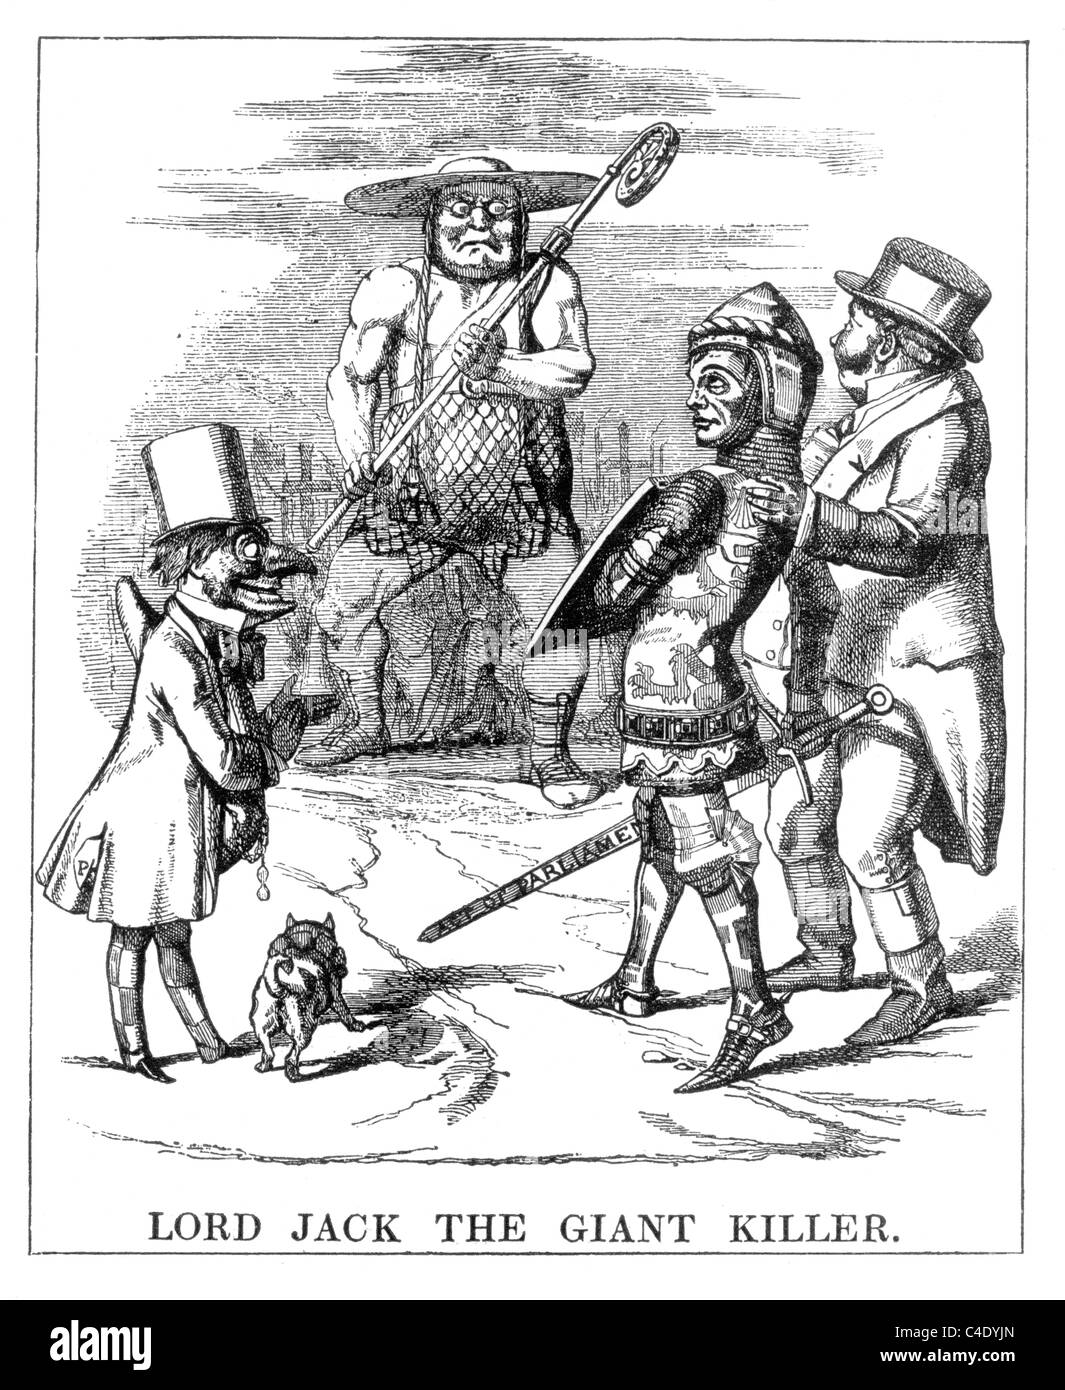 Sir John Tenniel's premier dessin animé pour Punch Magazine, 8 février 1851 Banque D'Images